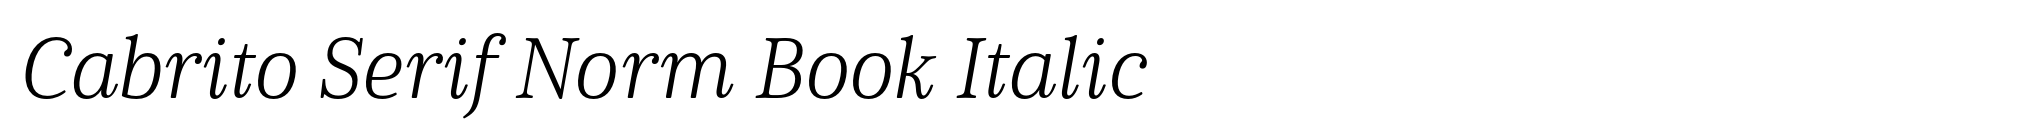 Cabrito Serif Norm Book Italic image